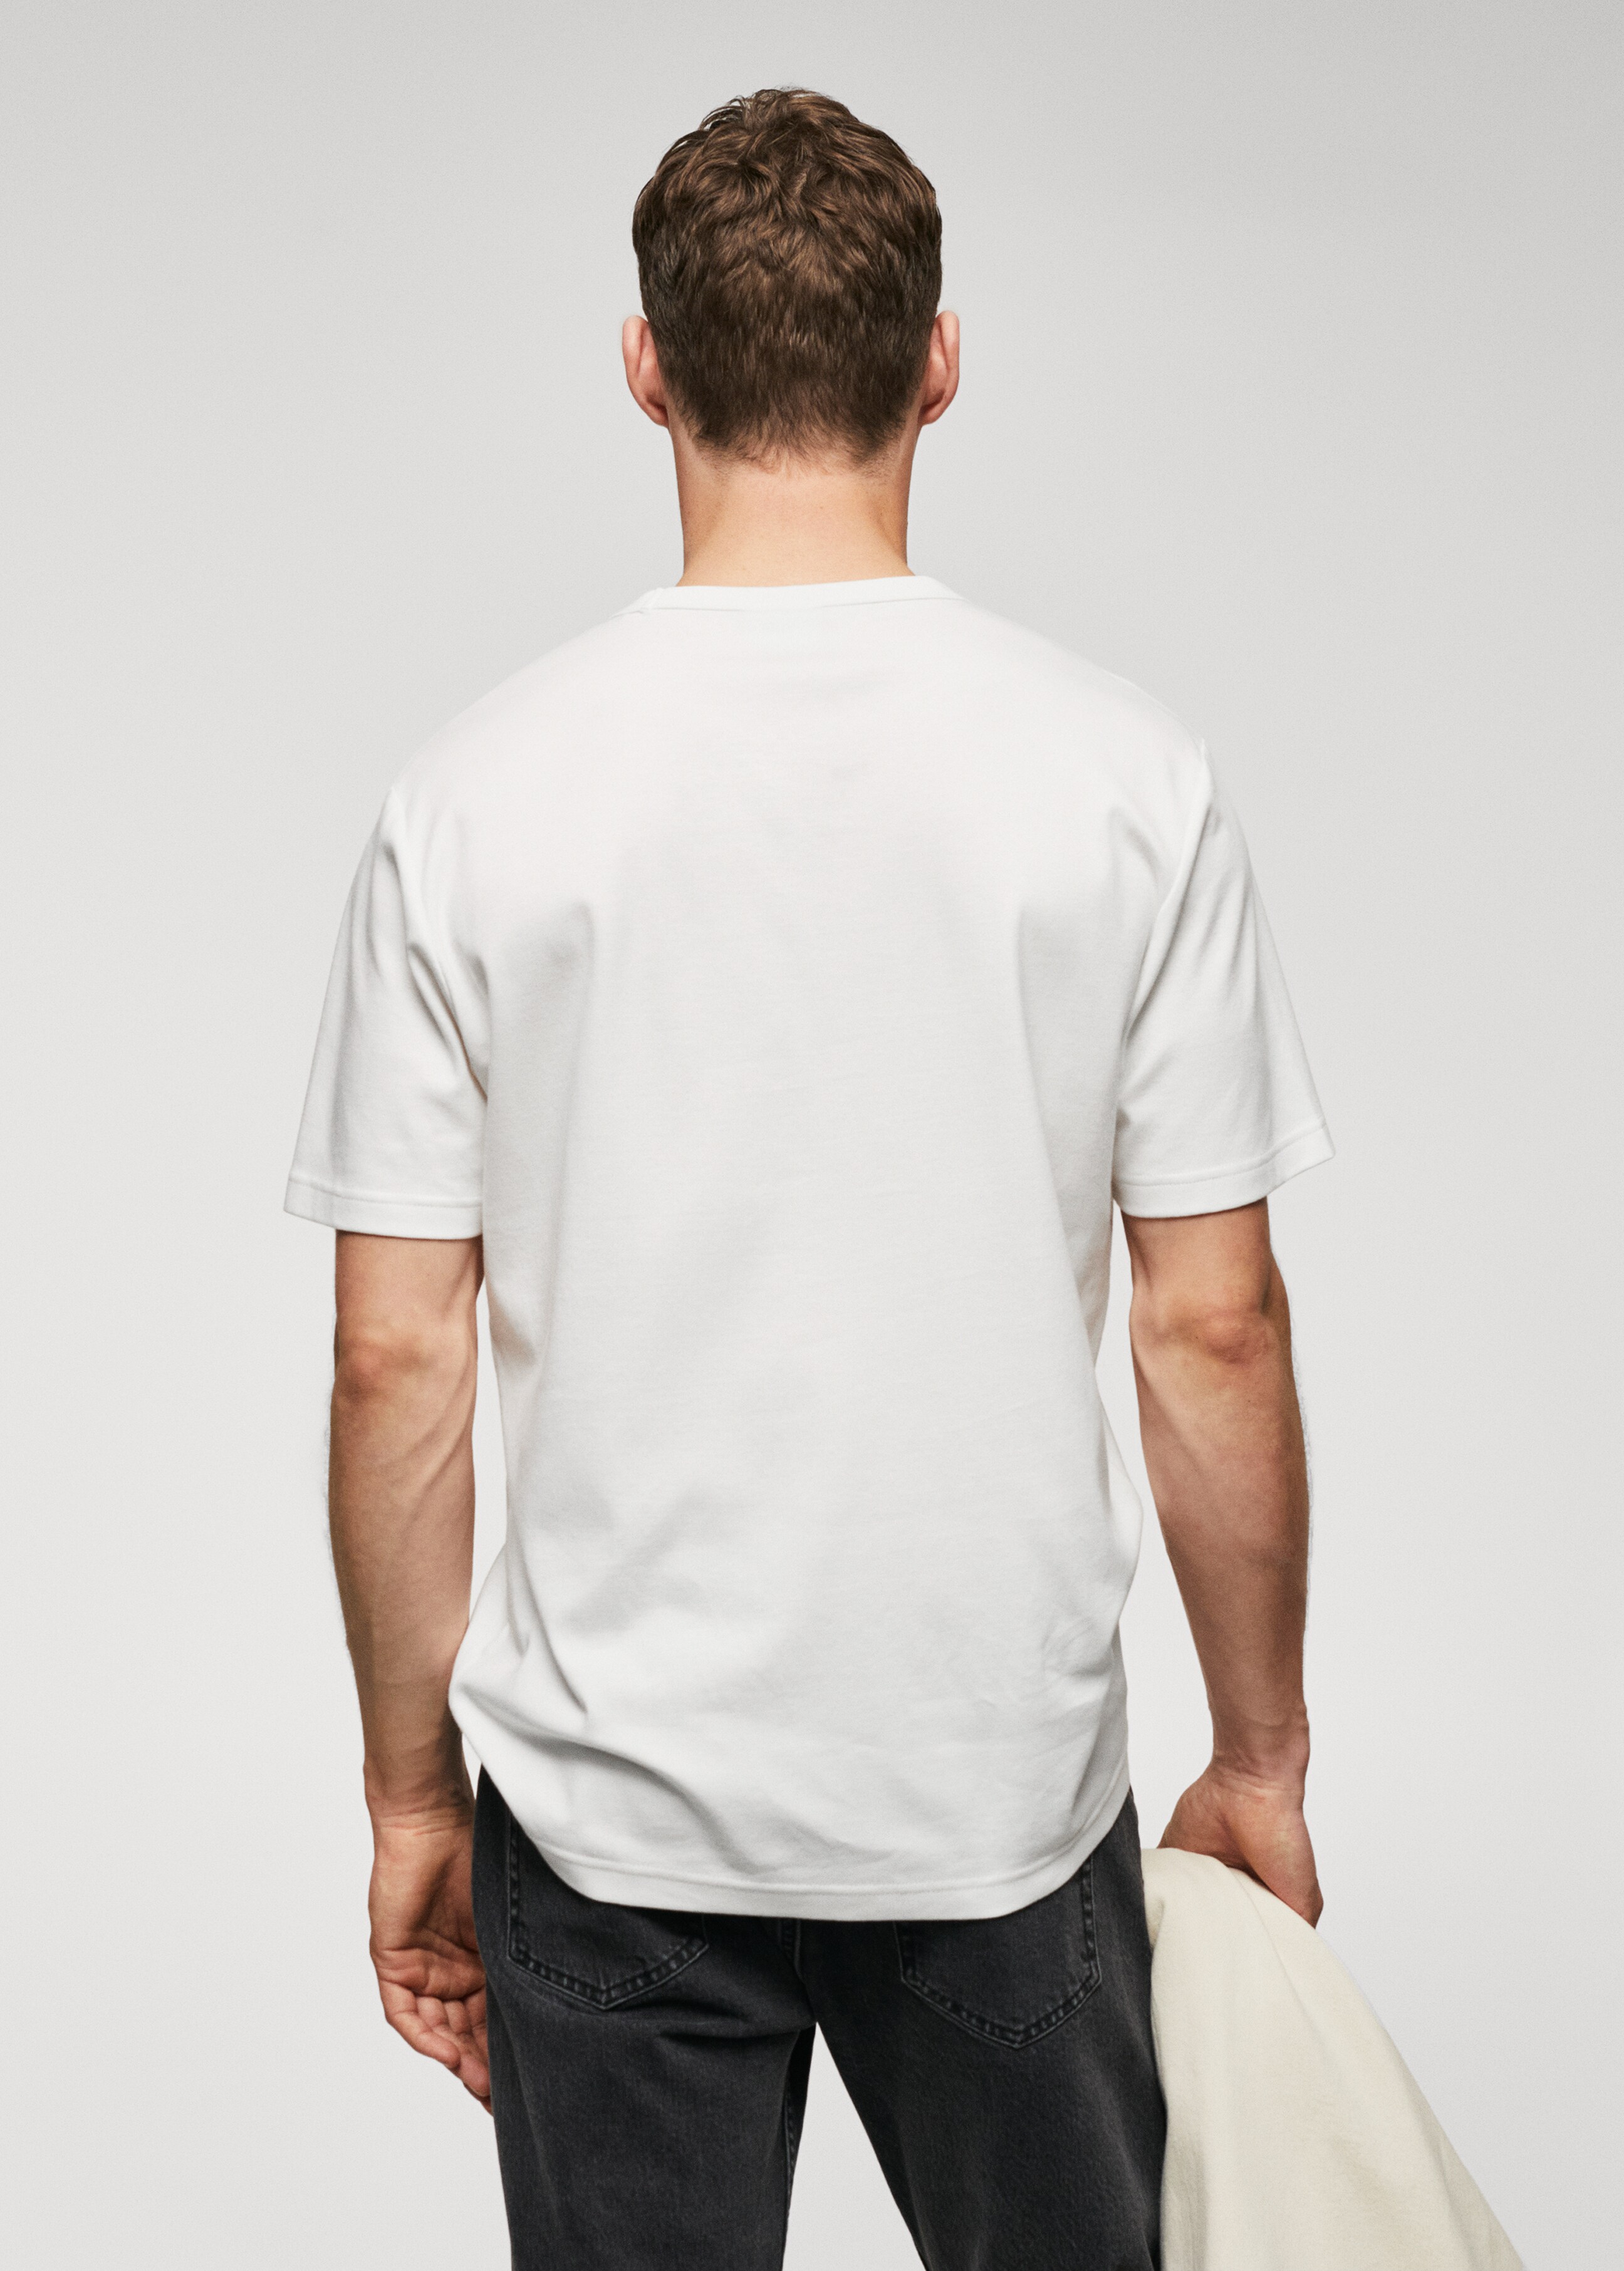 Camiseta bolsillo 100% algodón - Reverso del artículo